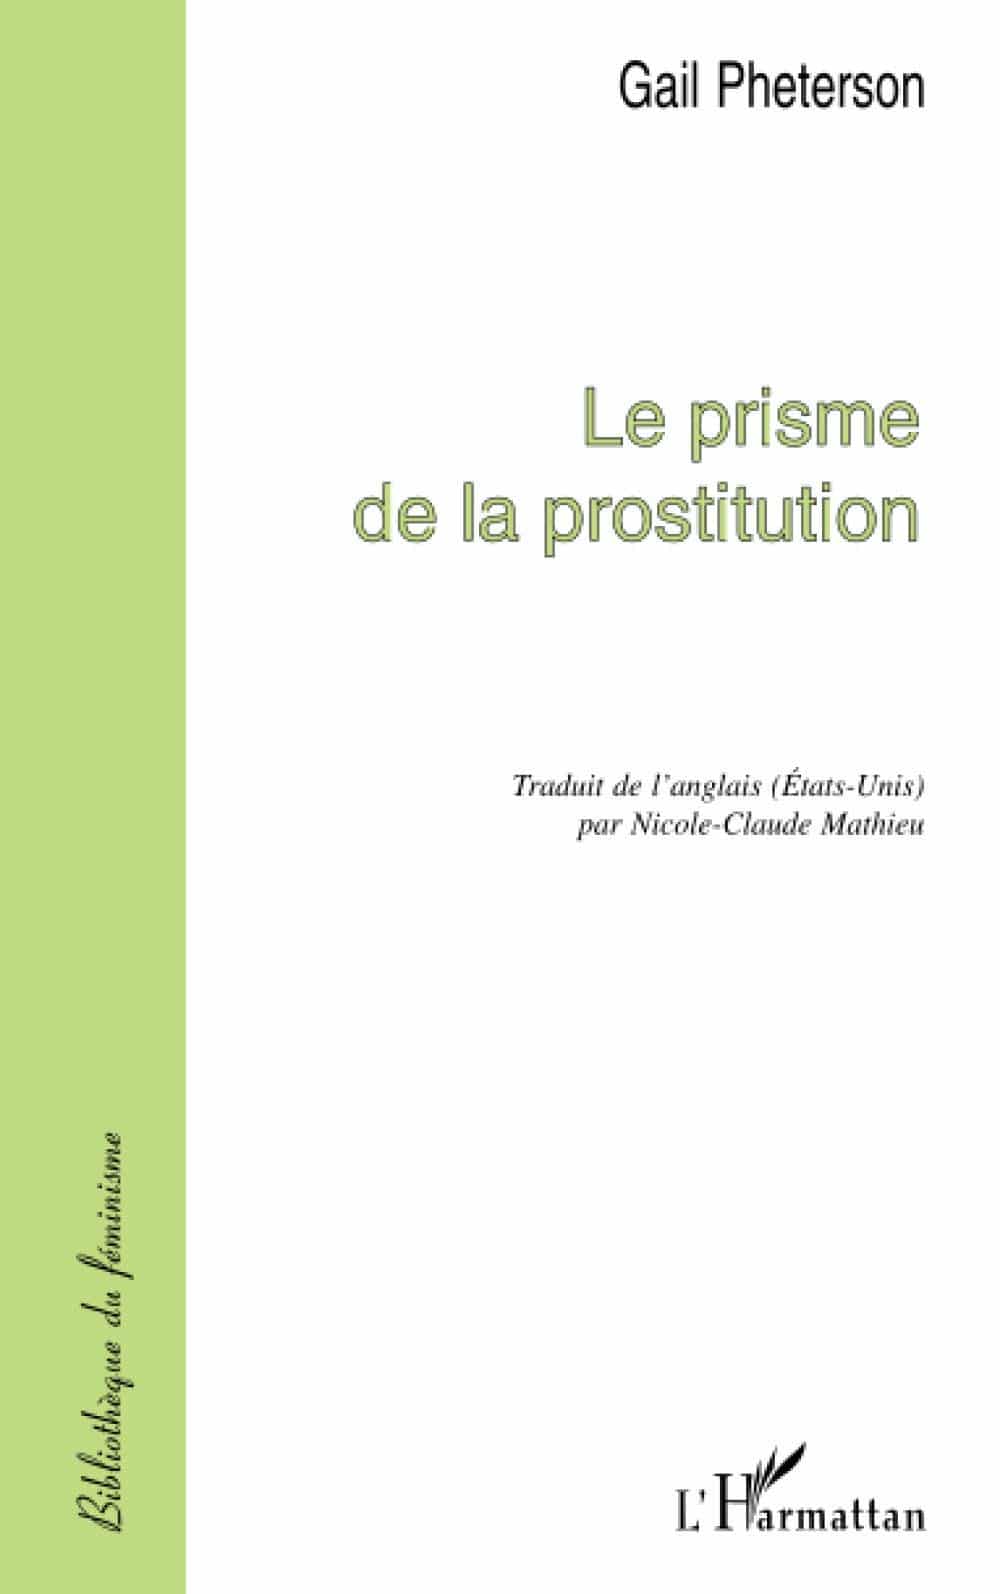 Gail Pheterson, Le prisme de la prostitution